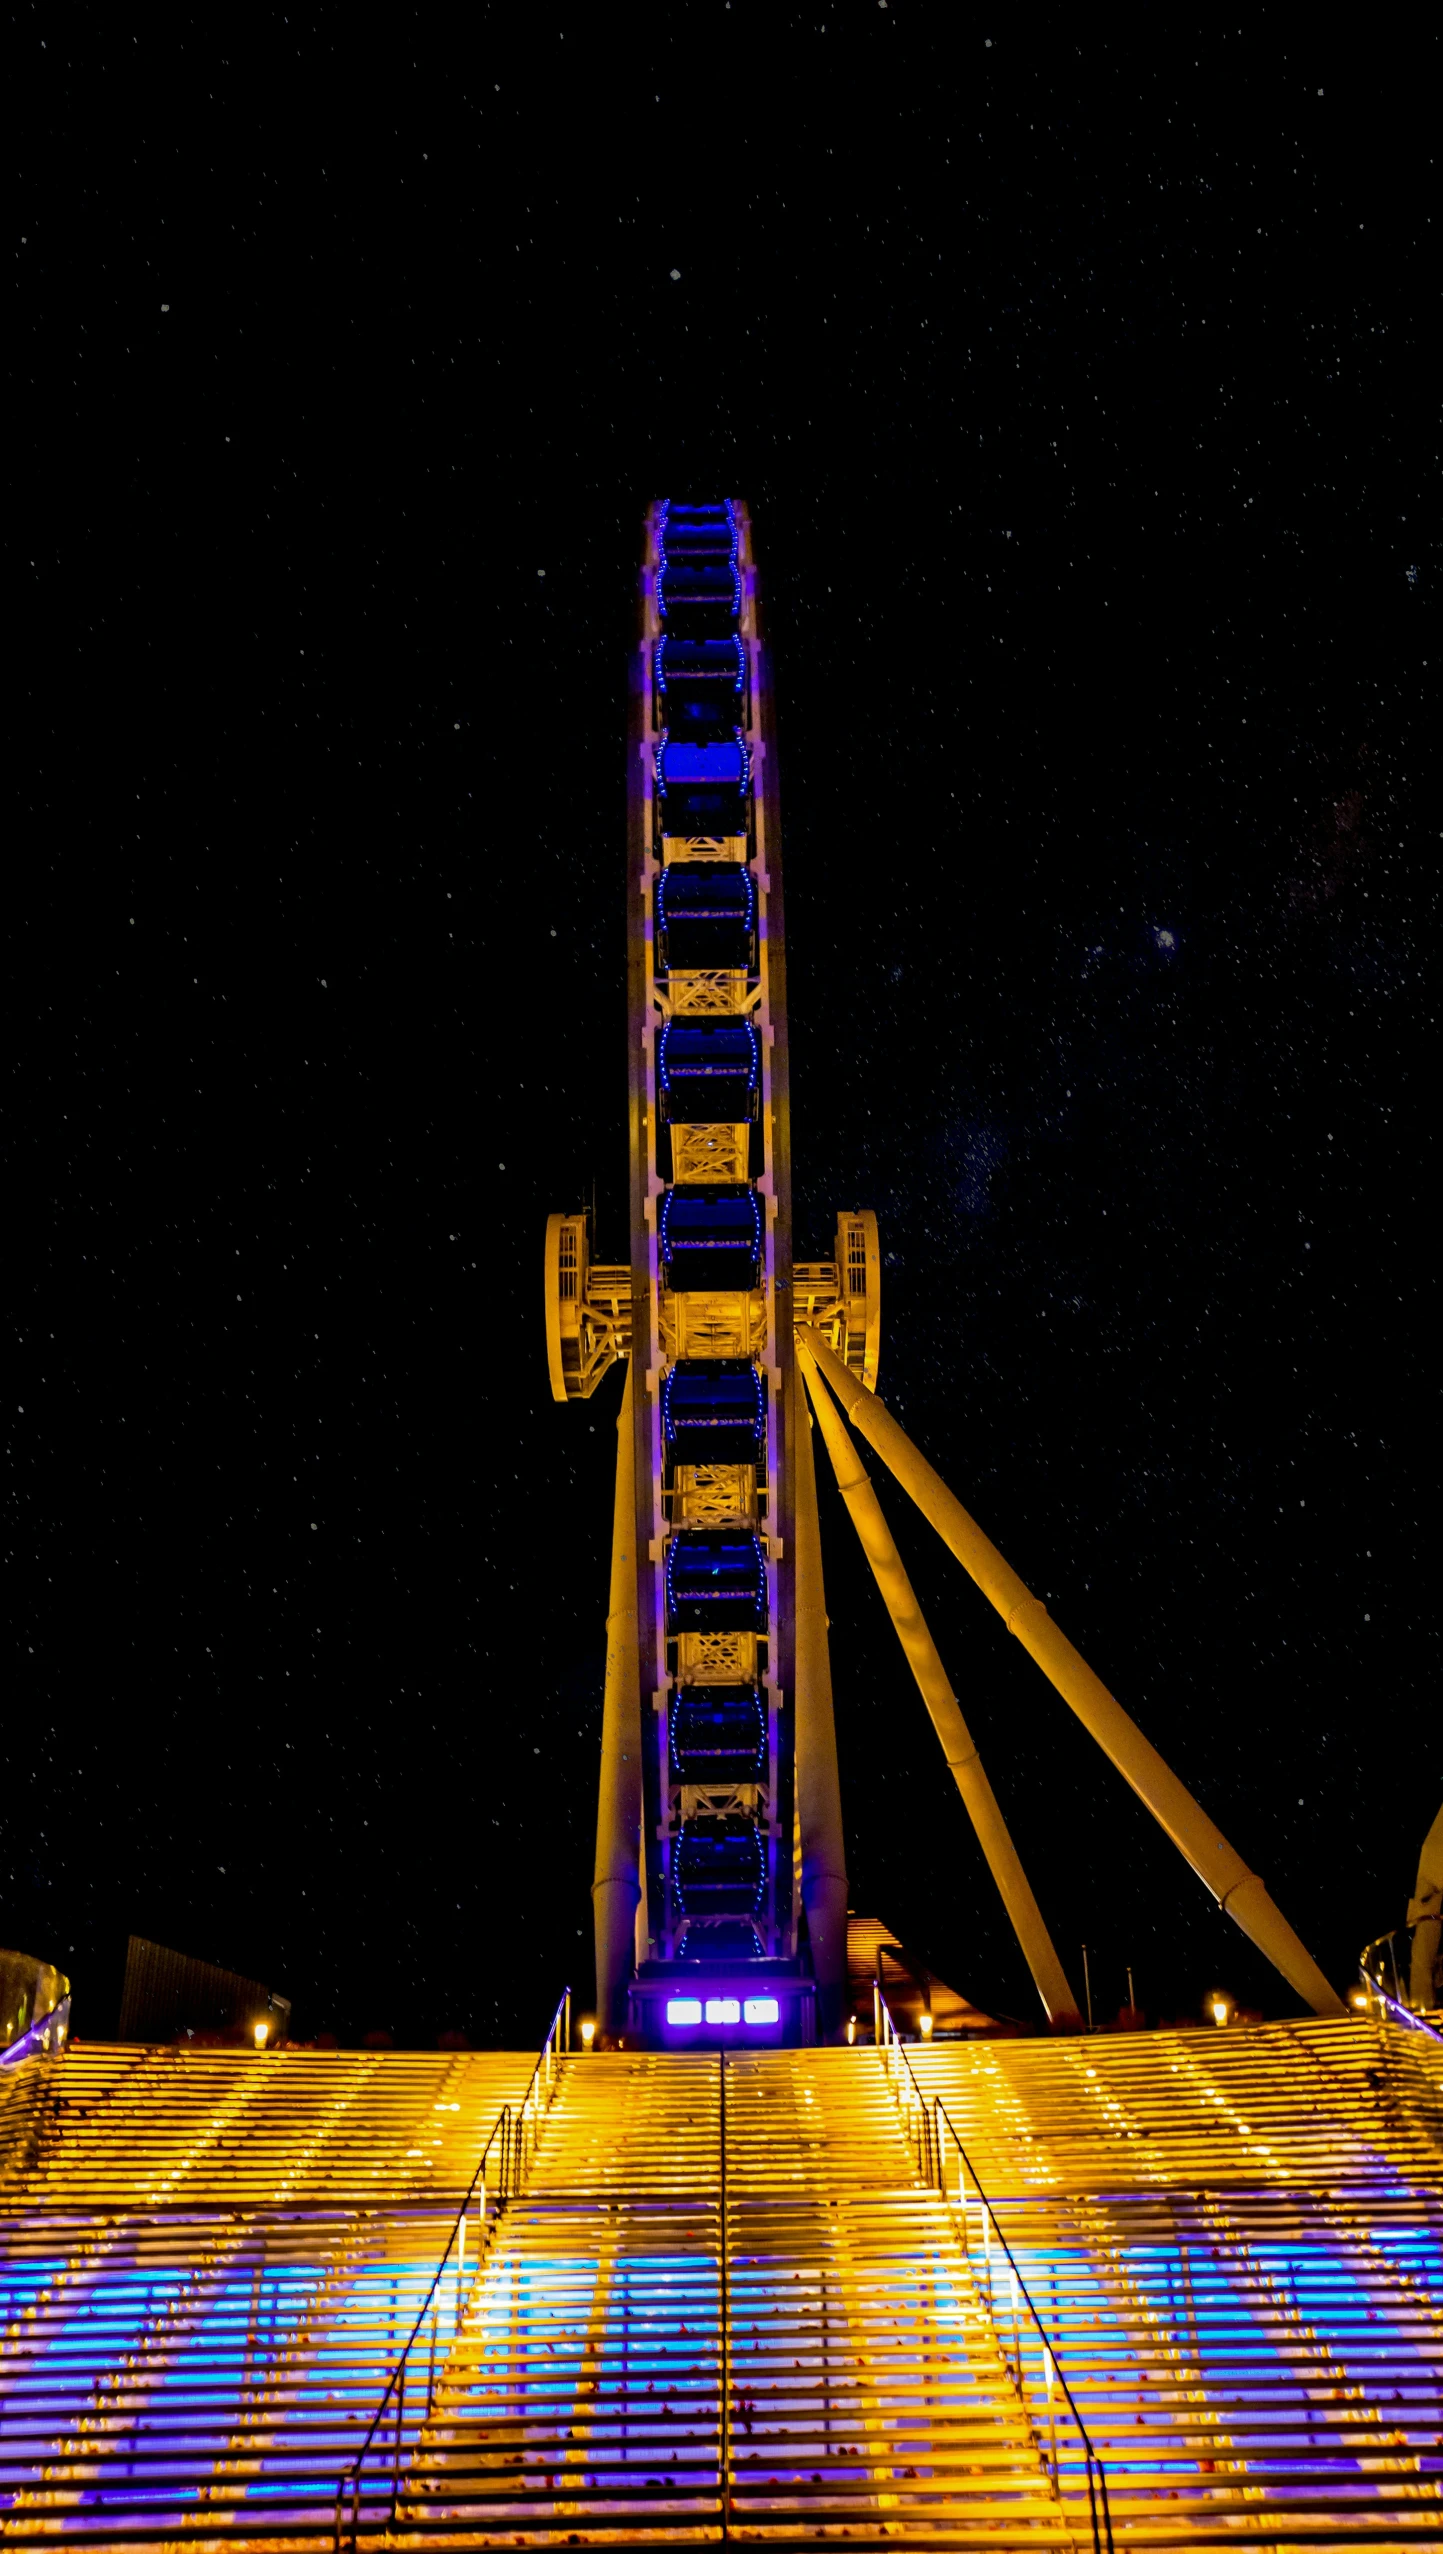 a ferris wheel lit up in the night sky